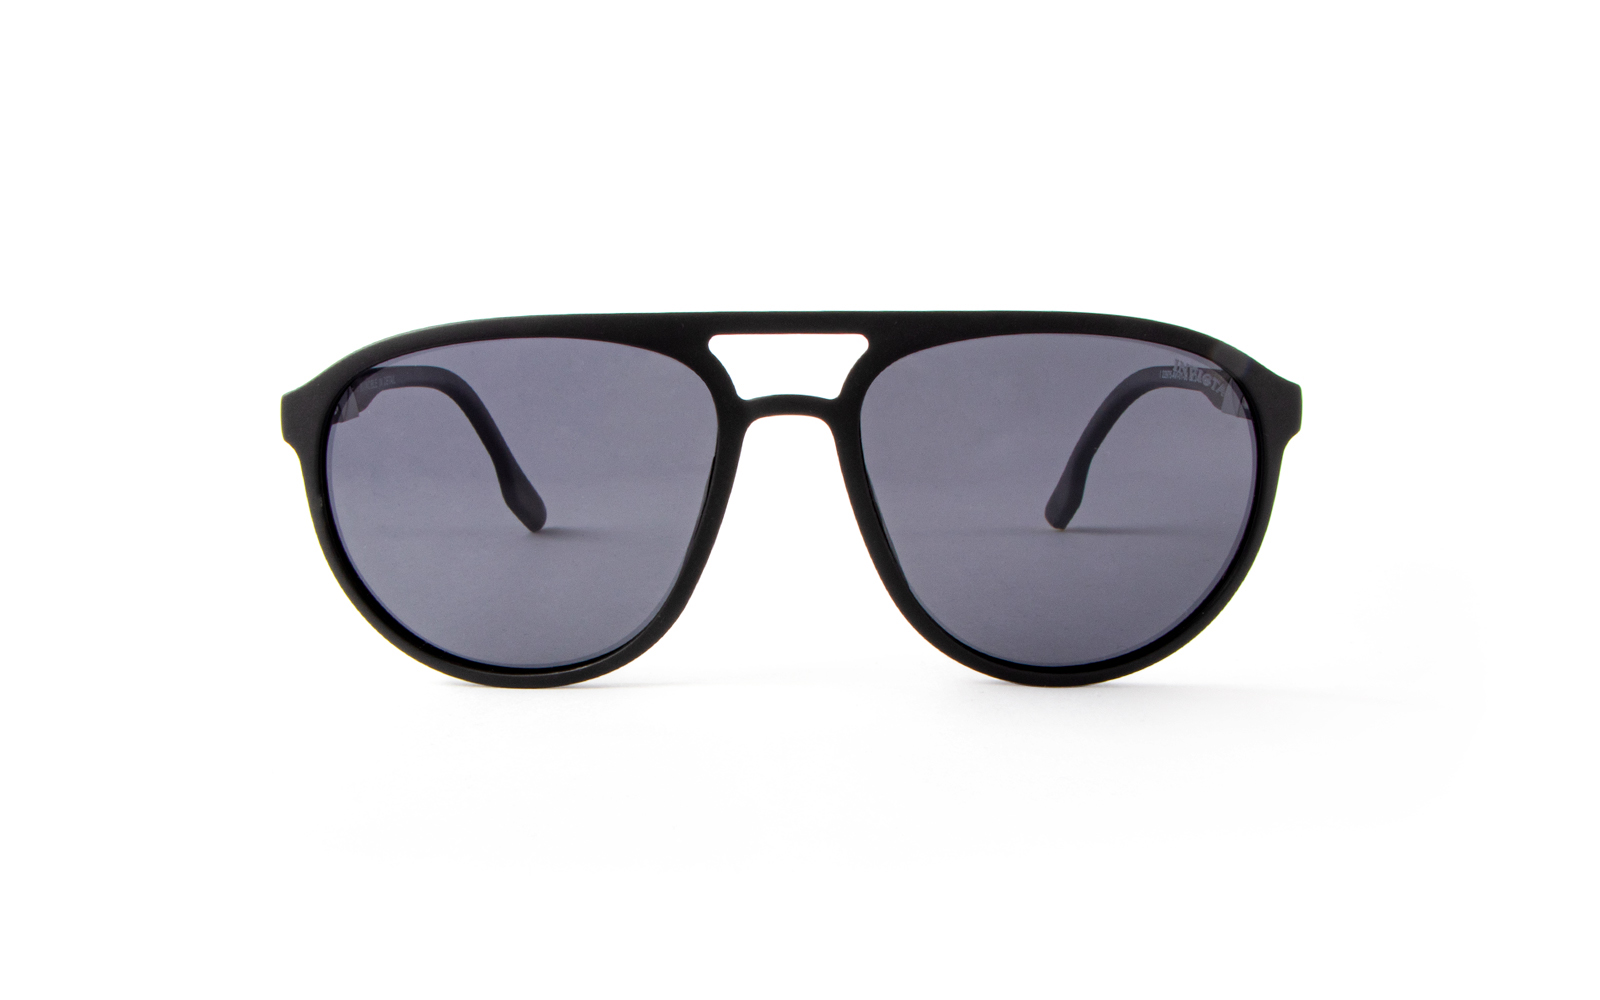 Invicta Men's Aviator Aviator Sunglasses, Black (22975-AVI-01-06)